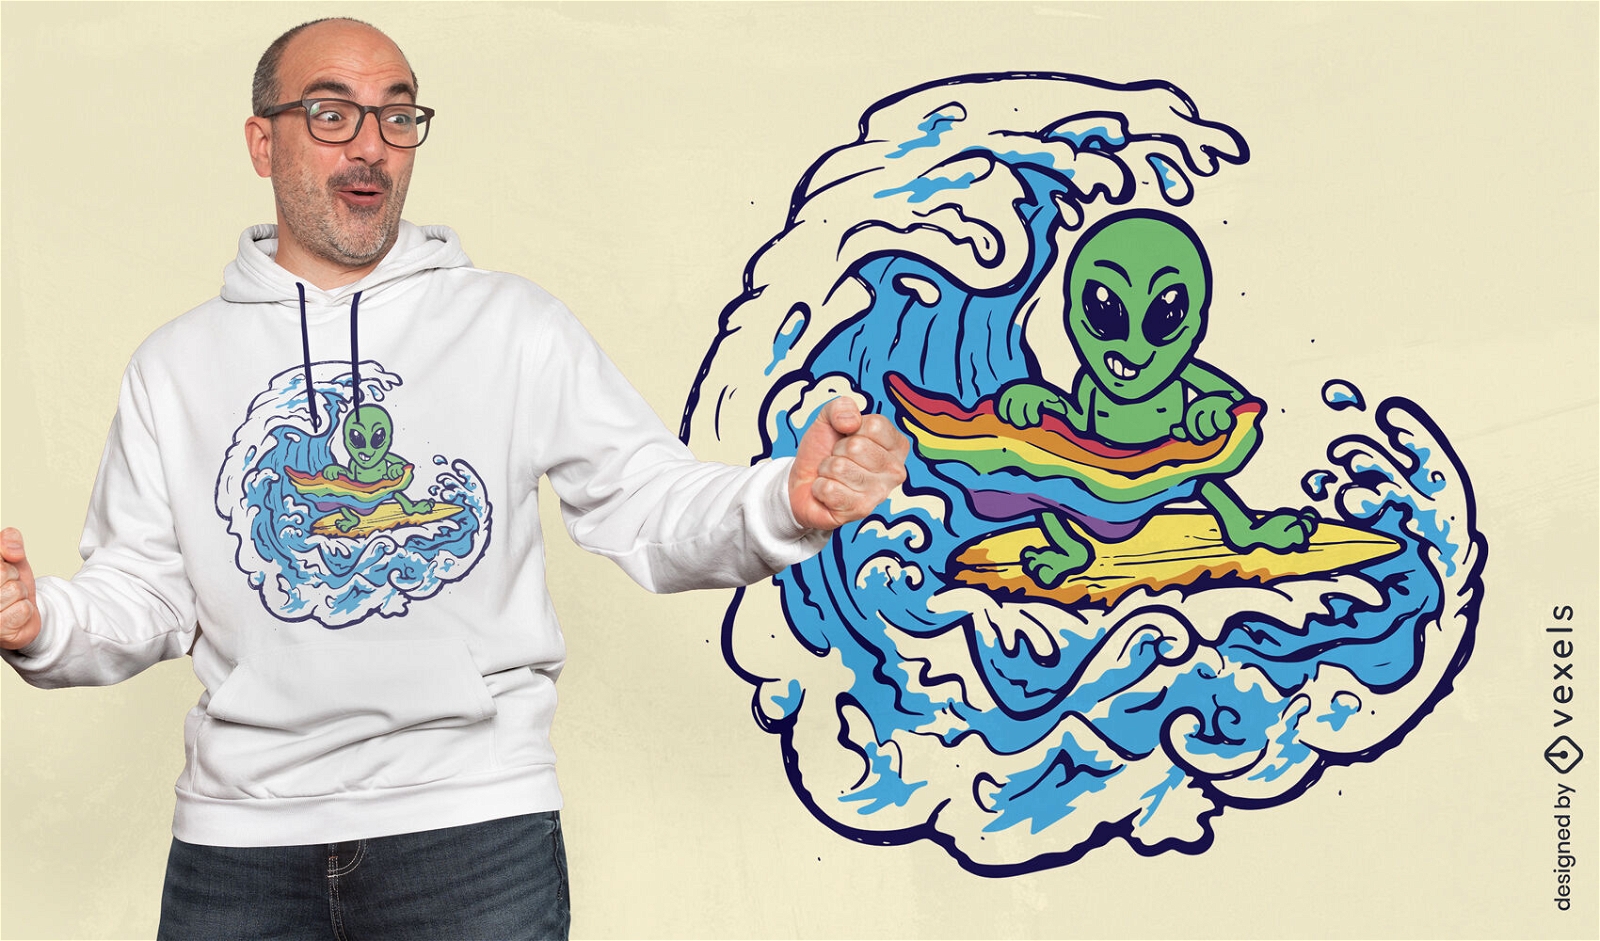 Alien-Surfen mit Stolzflaggen-T-Shirt-Design